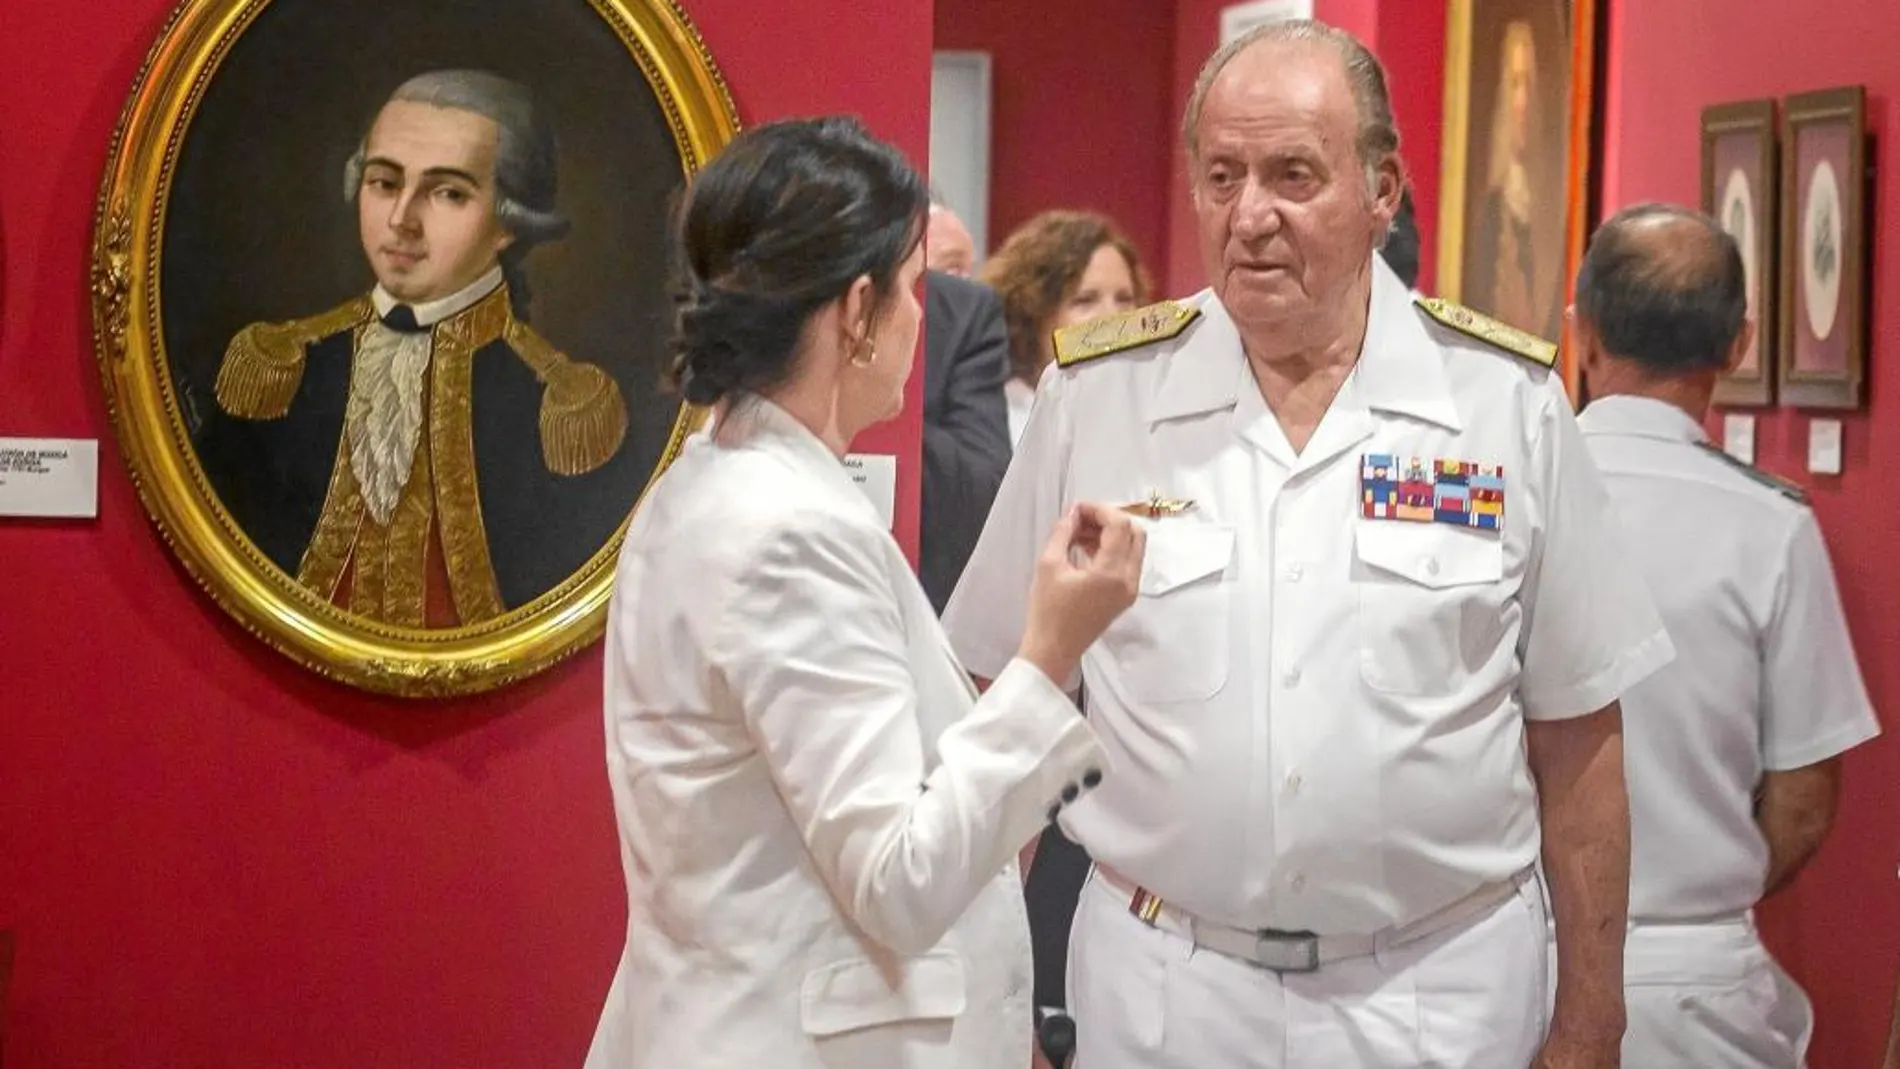 En el museo naval de San Fernando. Presidió la reunión de la Junta del real Patronato, coincidiendo con el segundo año de su abdicación